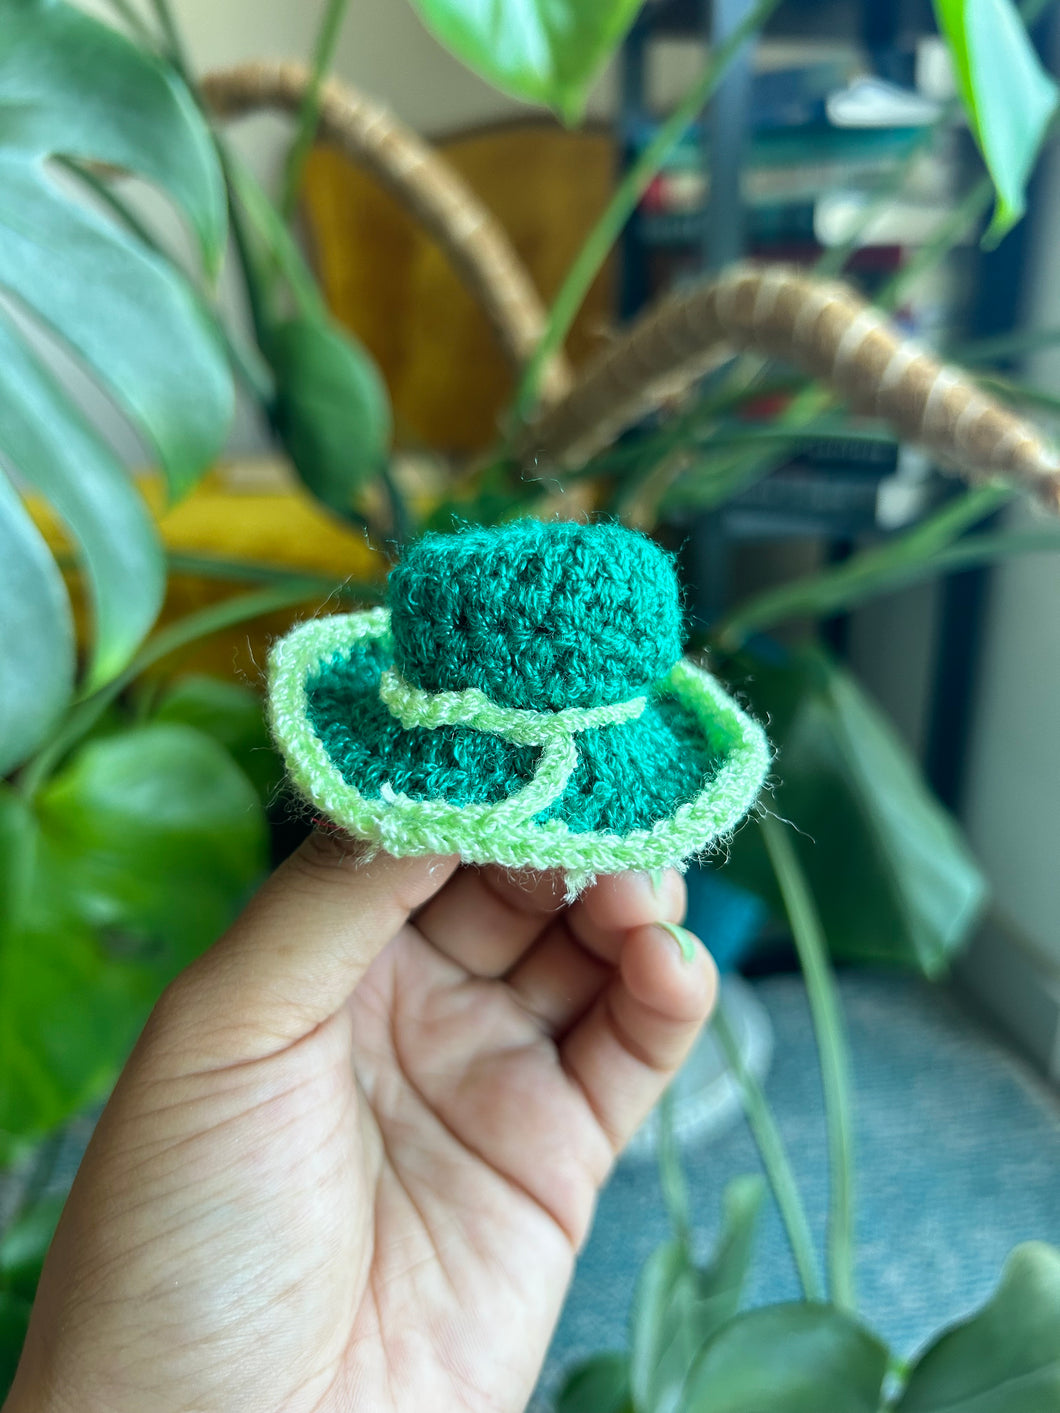 Sombrerito - green